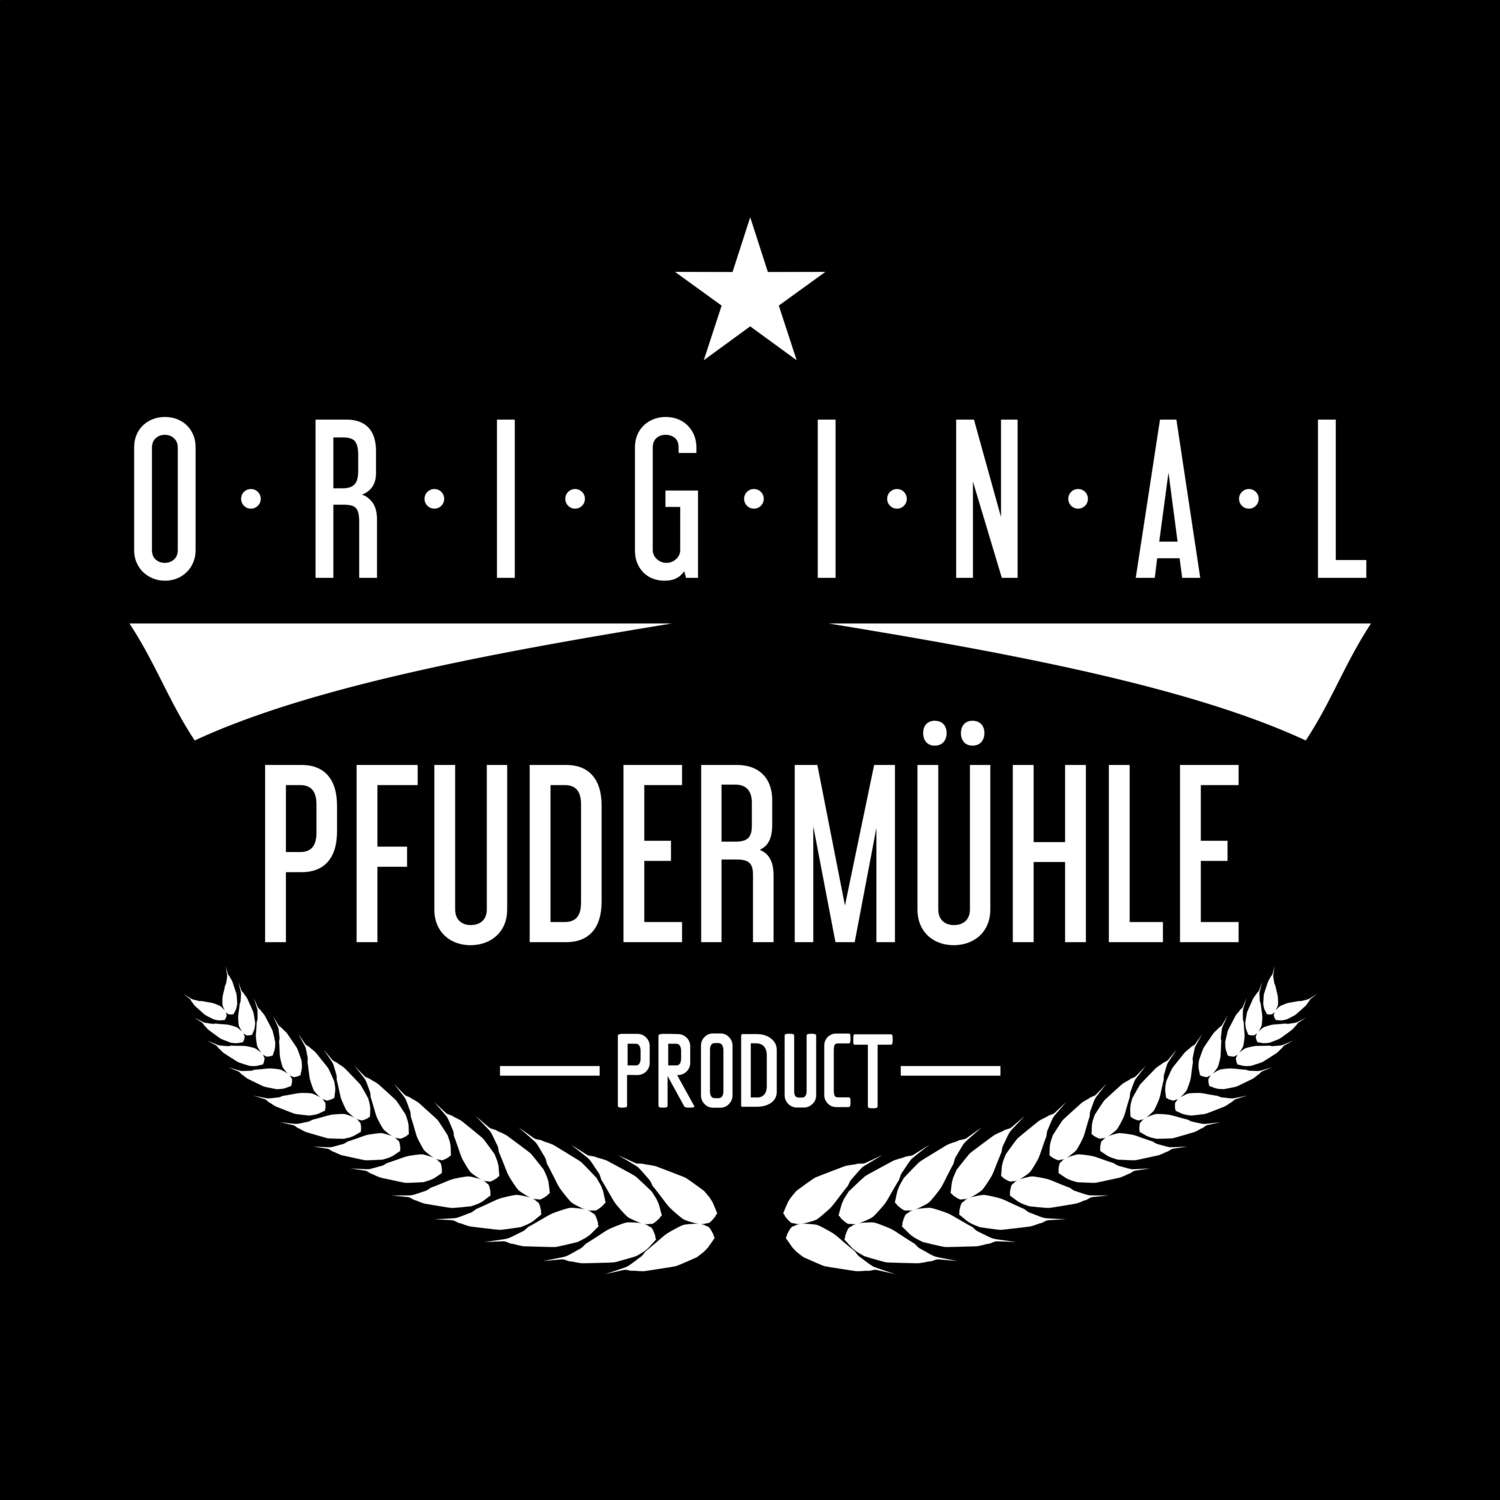 Pfudermühle T-Shirt »Original Product«